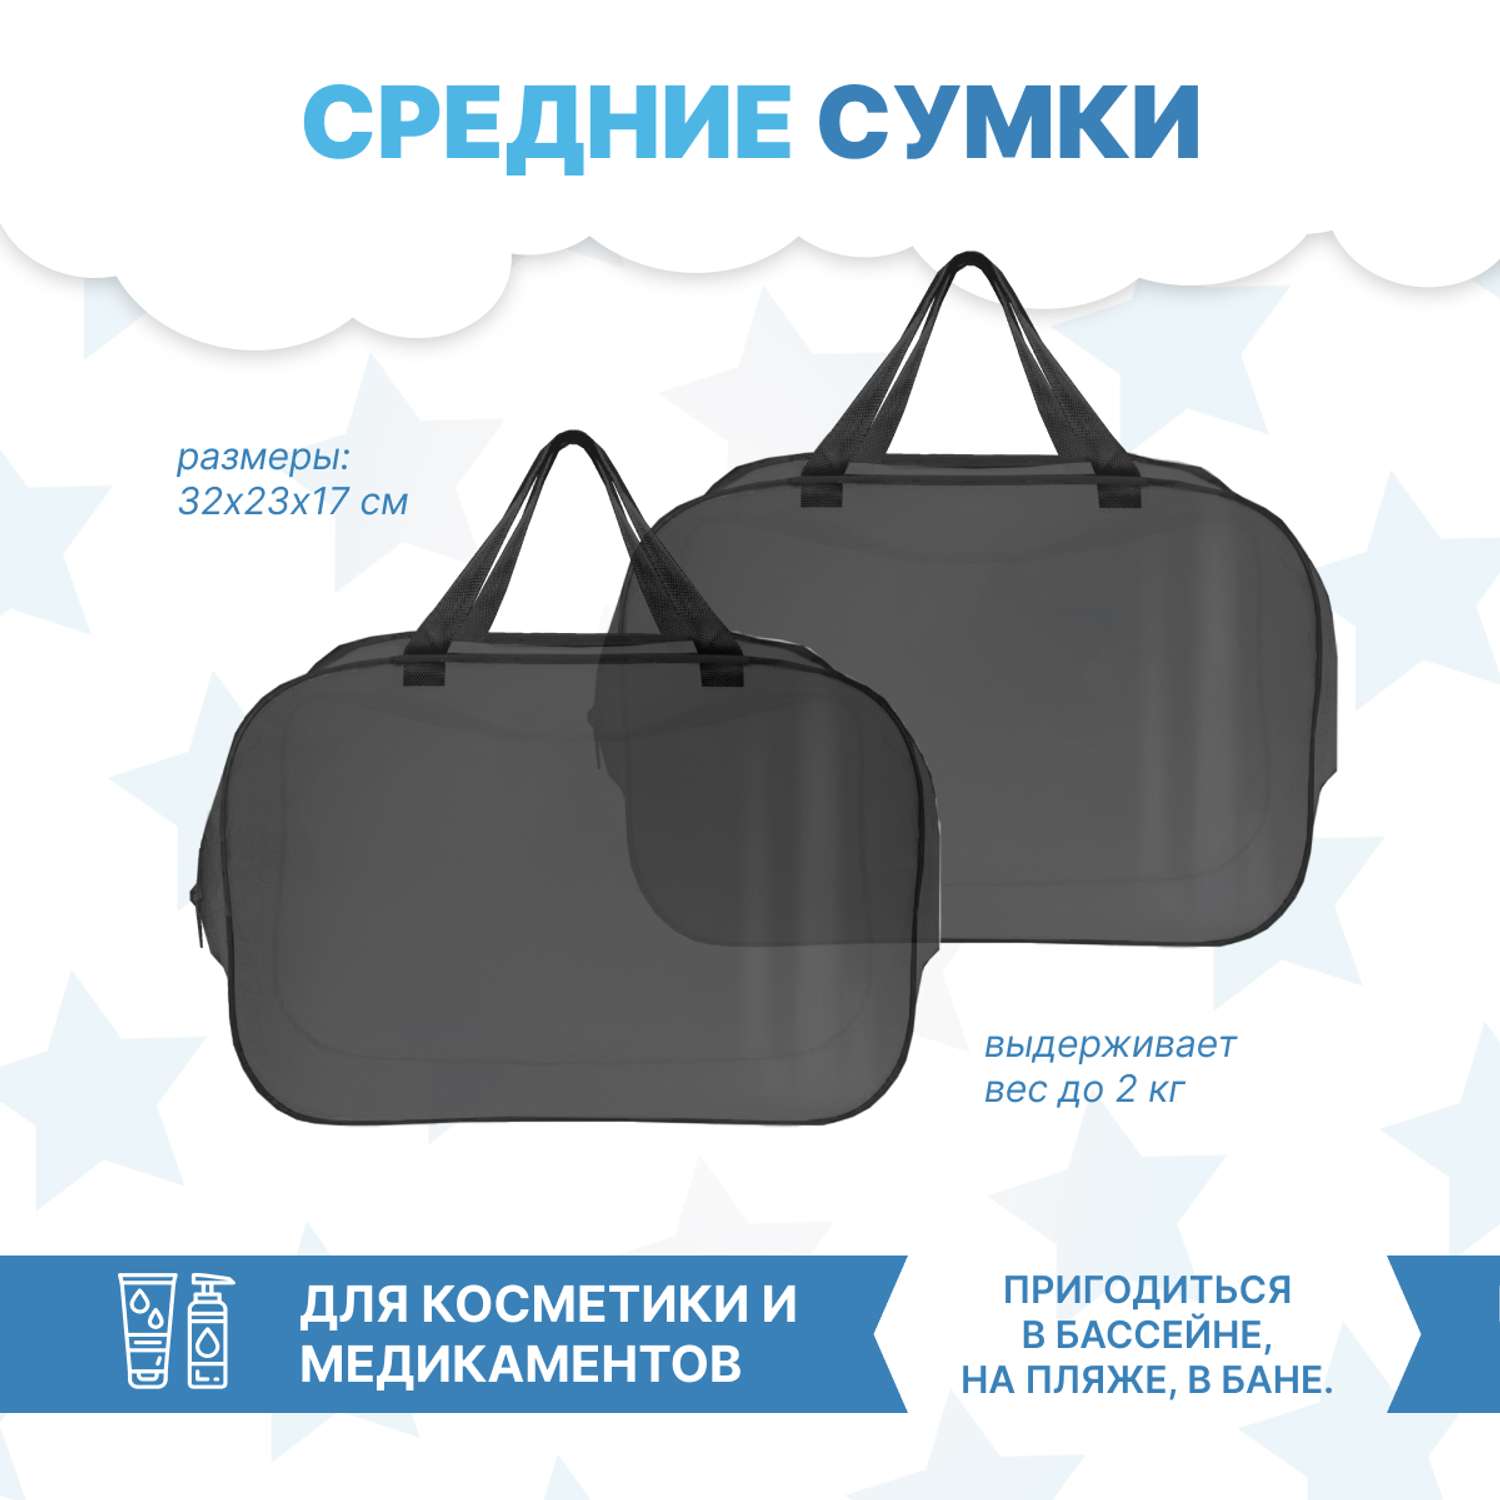 Набор для роддома ForBaby прозрачные сумки 3 шт - черный цвет - фото 7